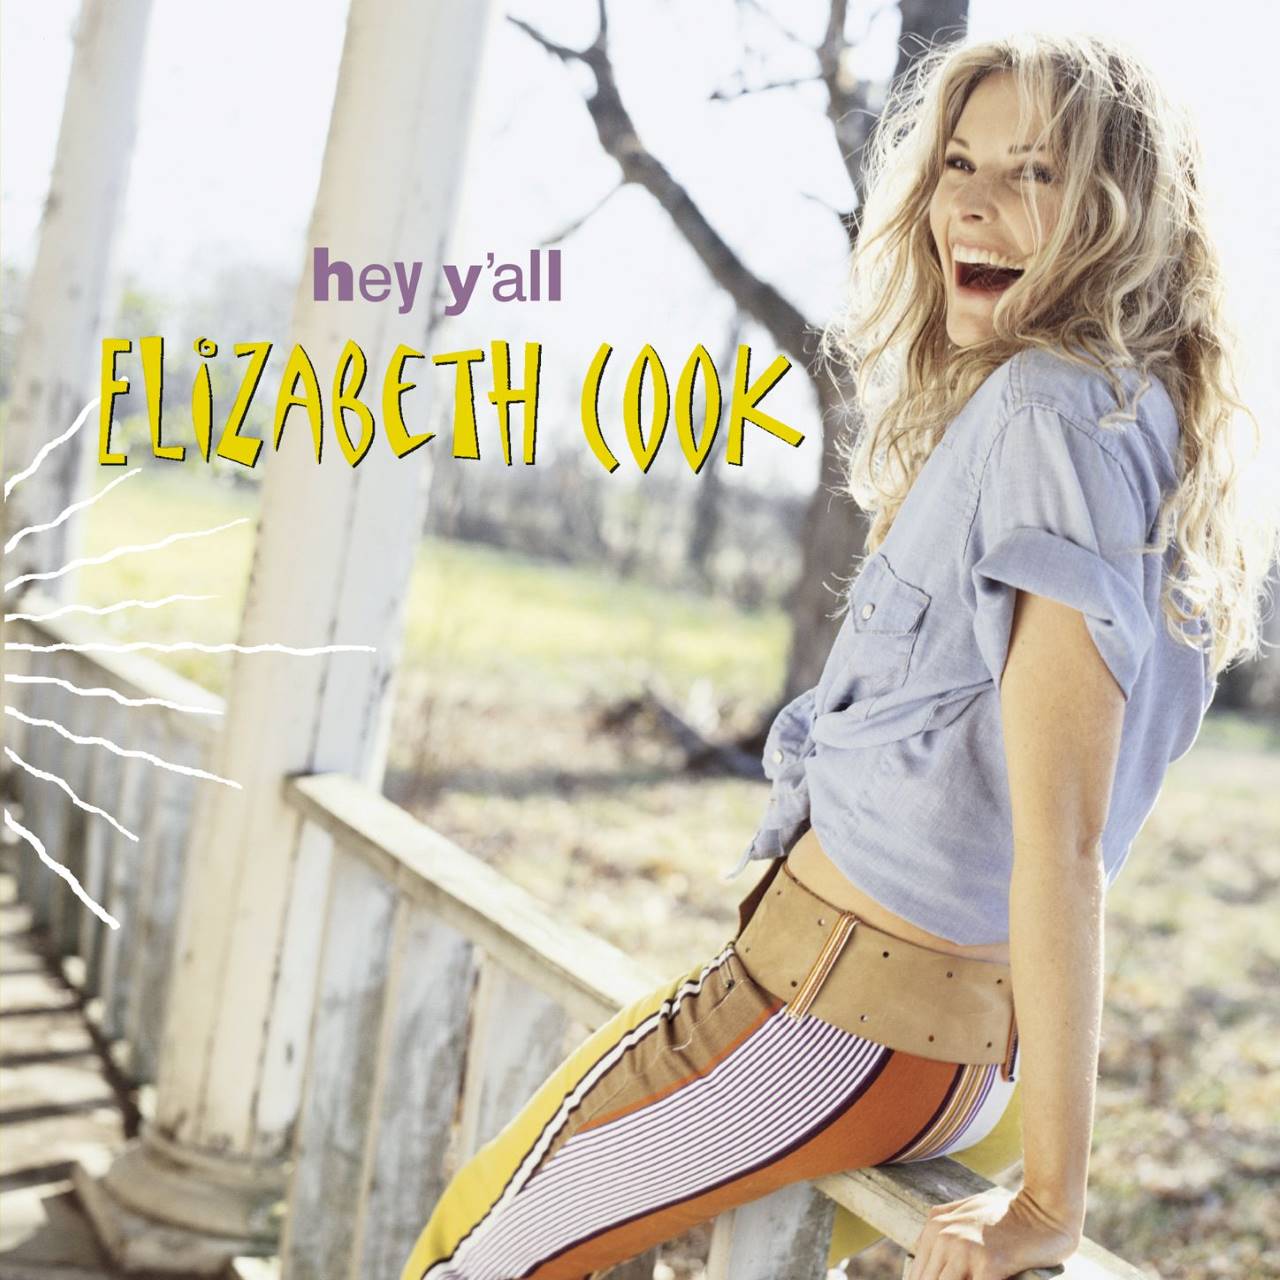 Elizabeth Cook - Hey Y’all cover album